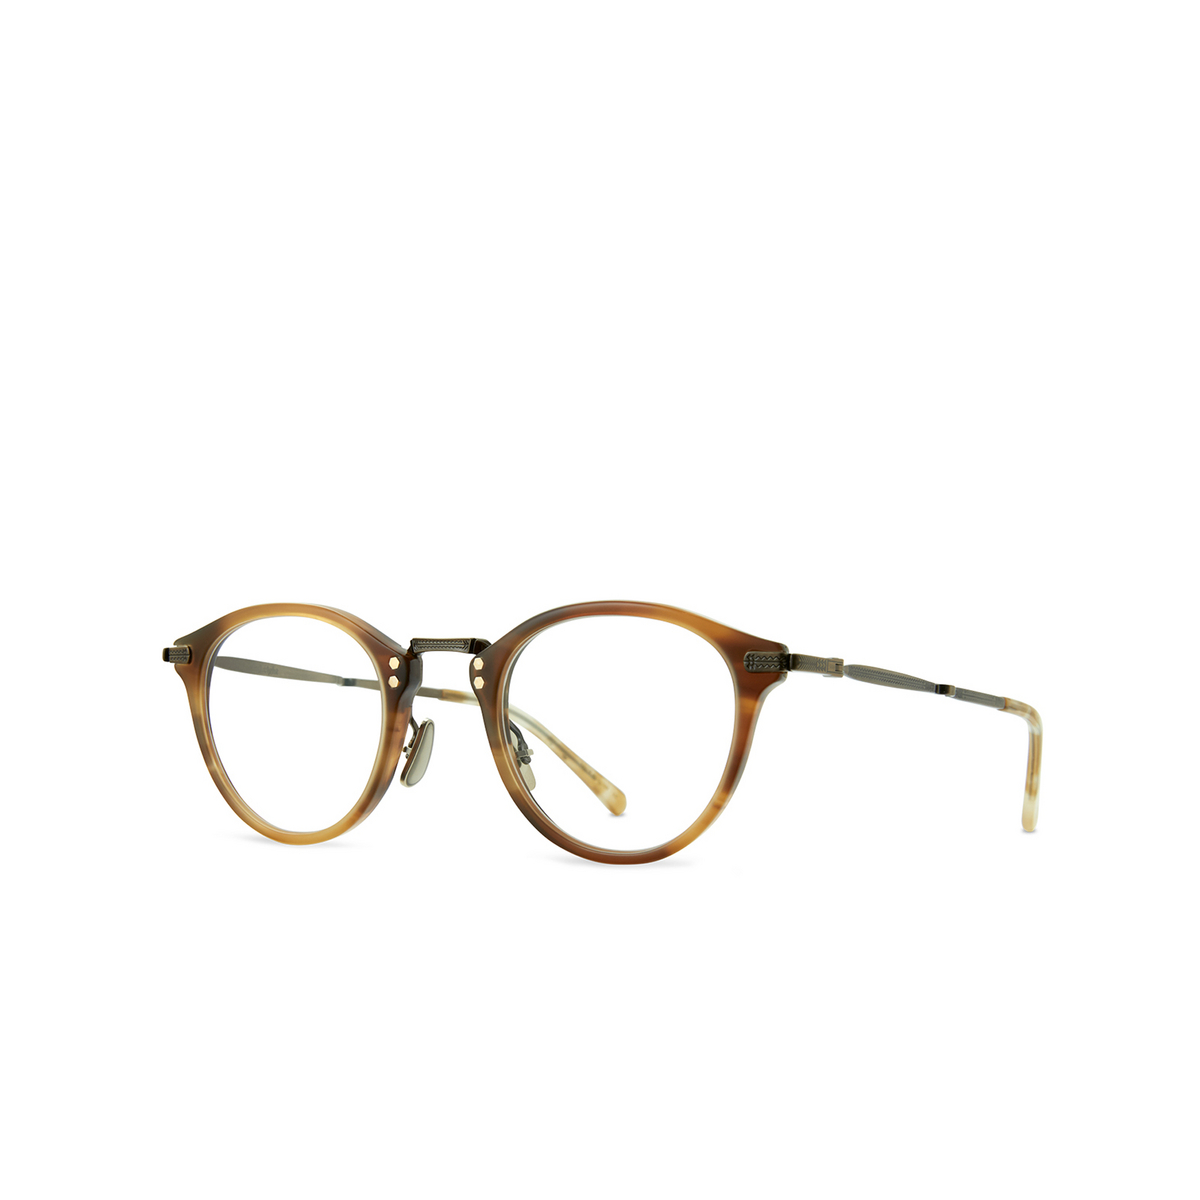 Mr. Leight STANLEY C Eyeglasses BW-ATG-SPH Beachwood-Antique Gold-Spotted Honey - 2/3